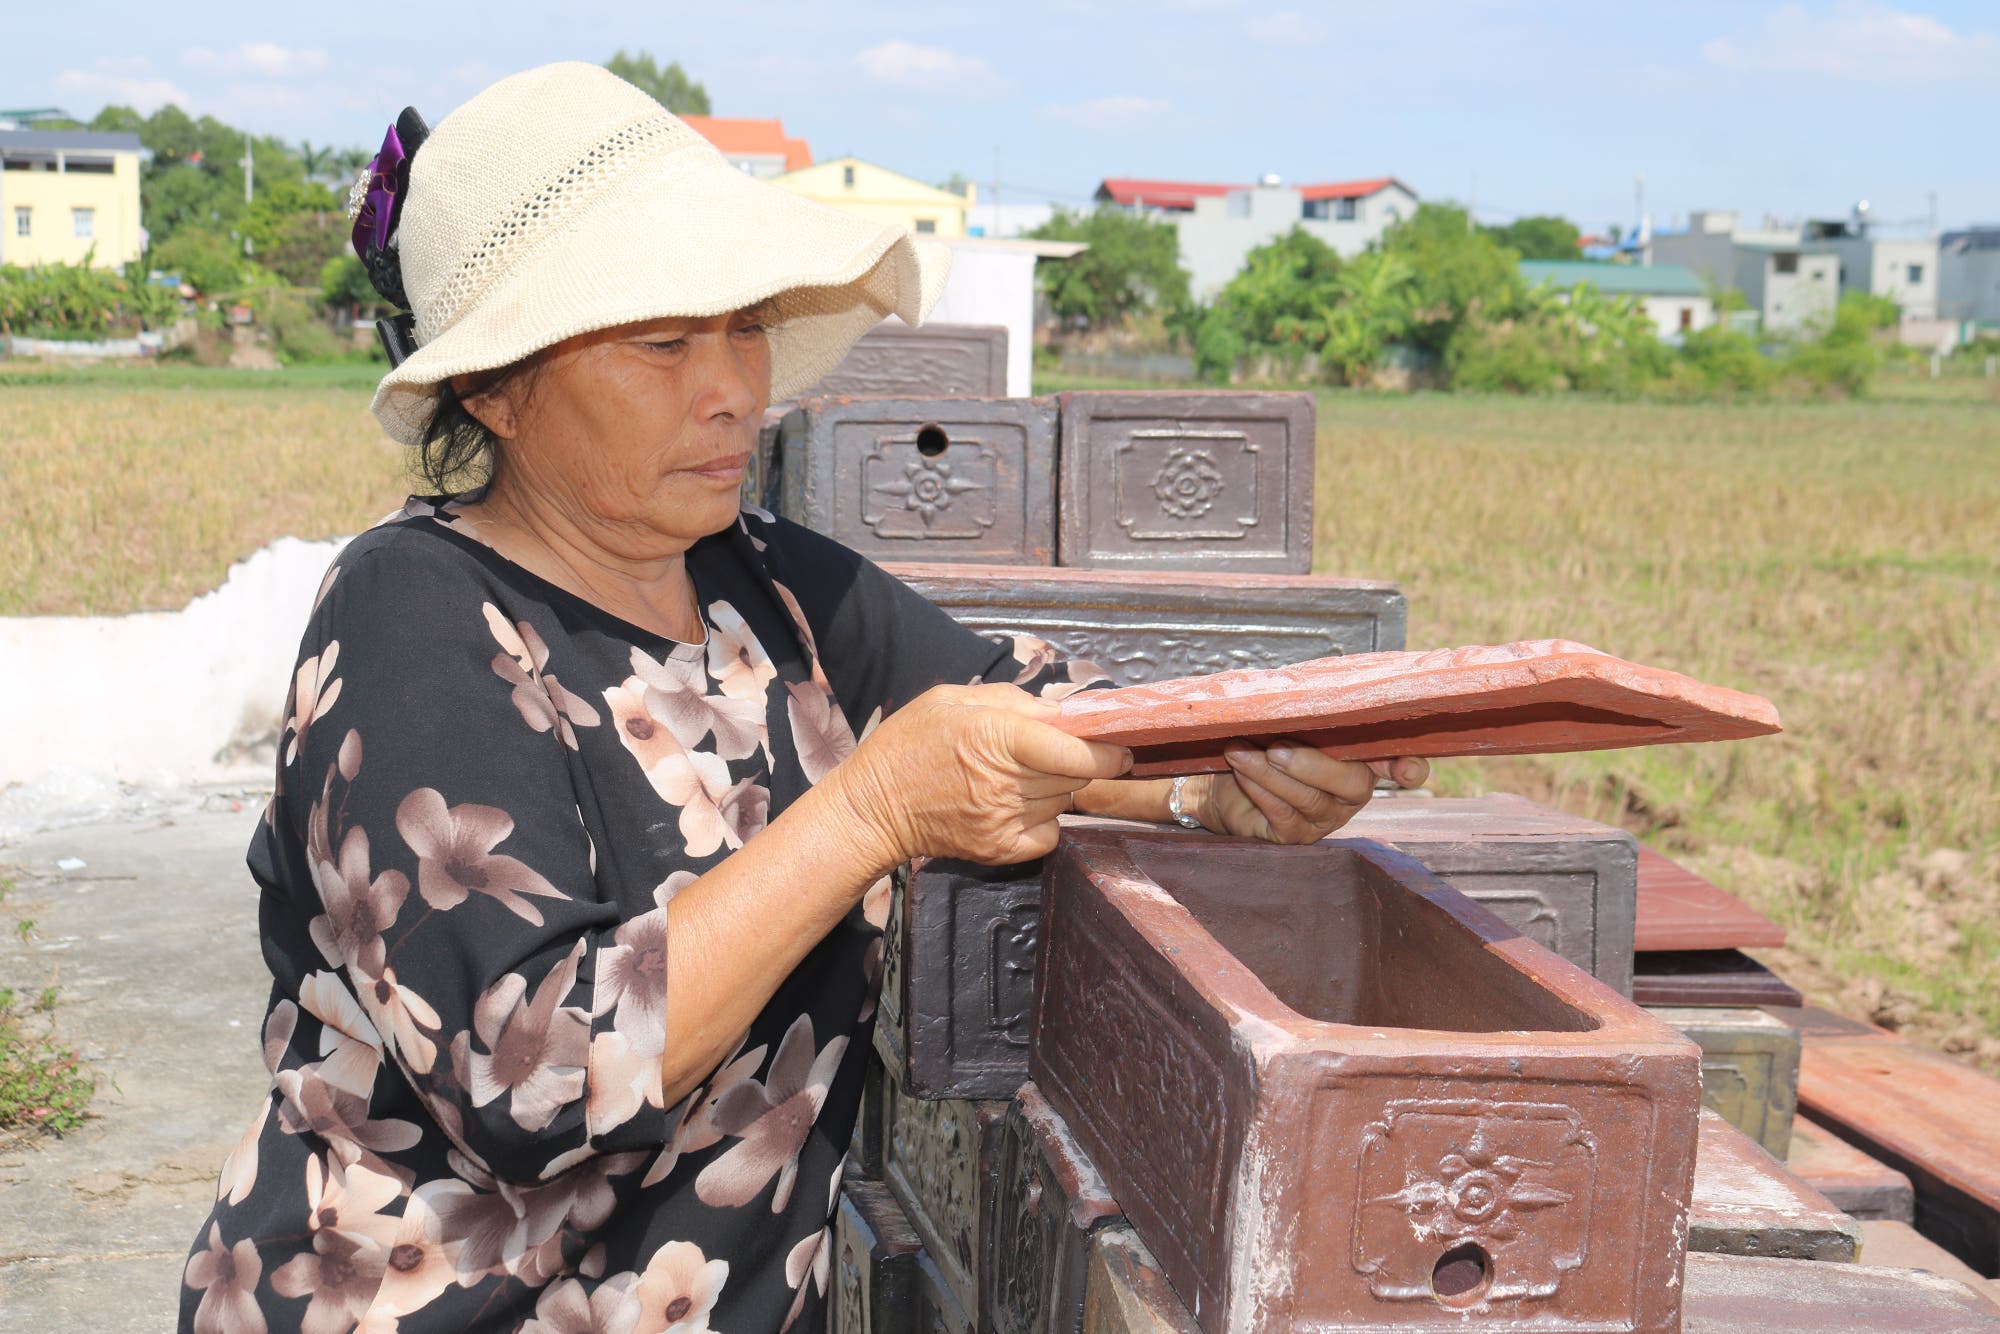 Tonsarkophage für den Föten-Friedhof in Vietnam